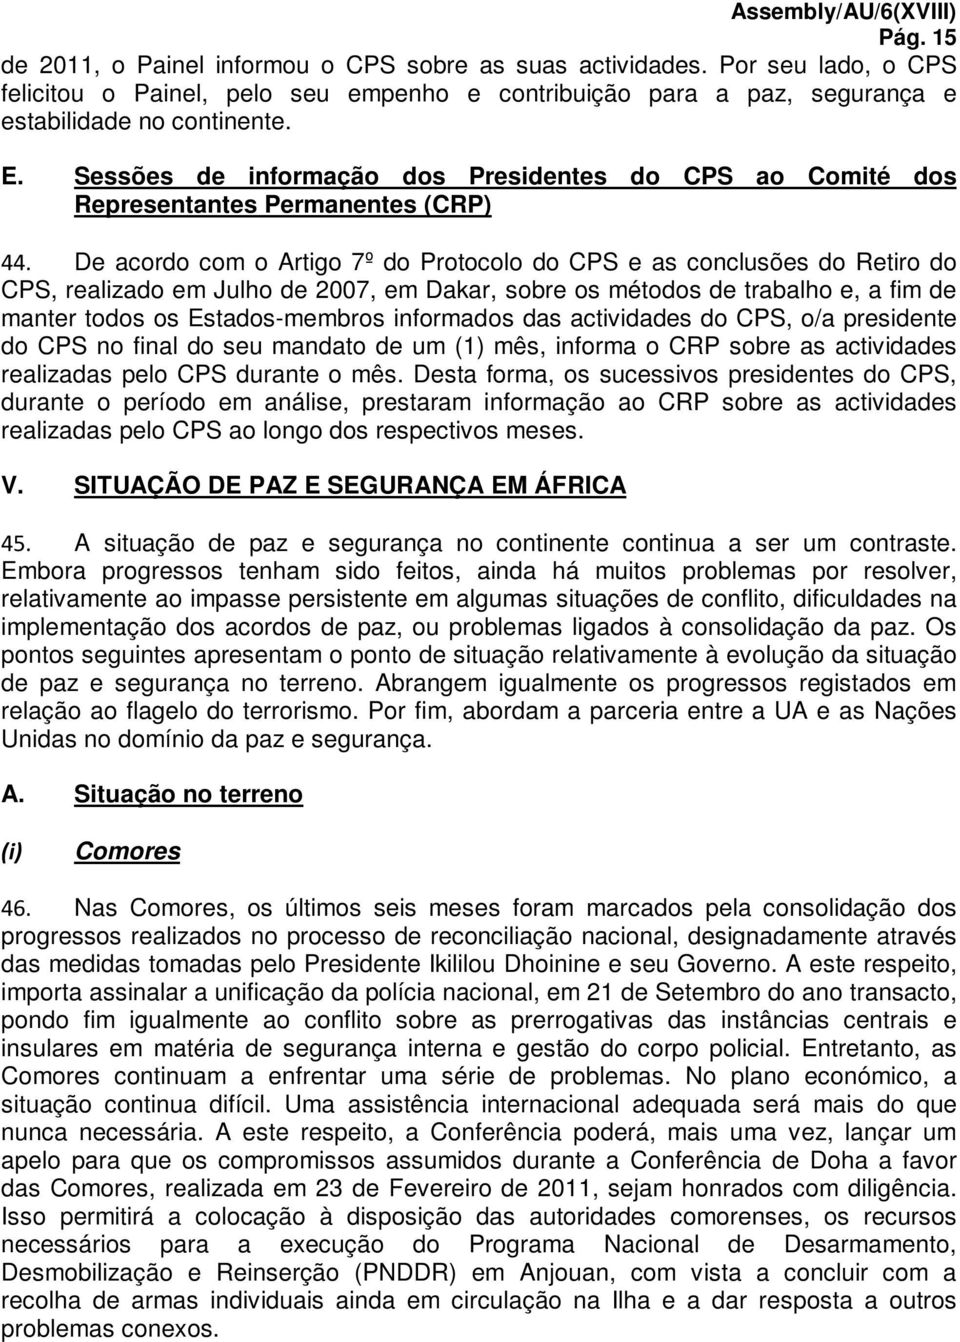 De acordo com o Artigo 7º do Protocolo do CPS e as conclusões do Retiro do CPS, realizado em Julho de 2007, em Dakar, sobre os métodos de trabalho e, a fim de manter todos os Estados-membros